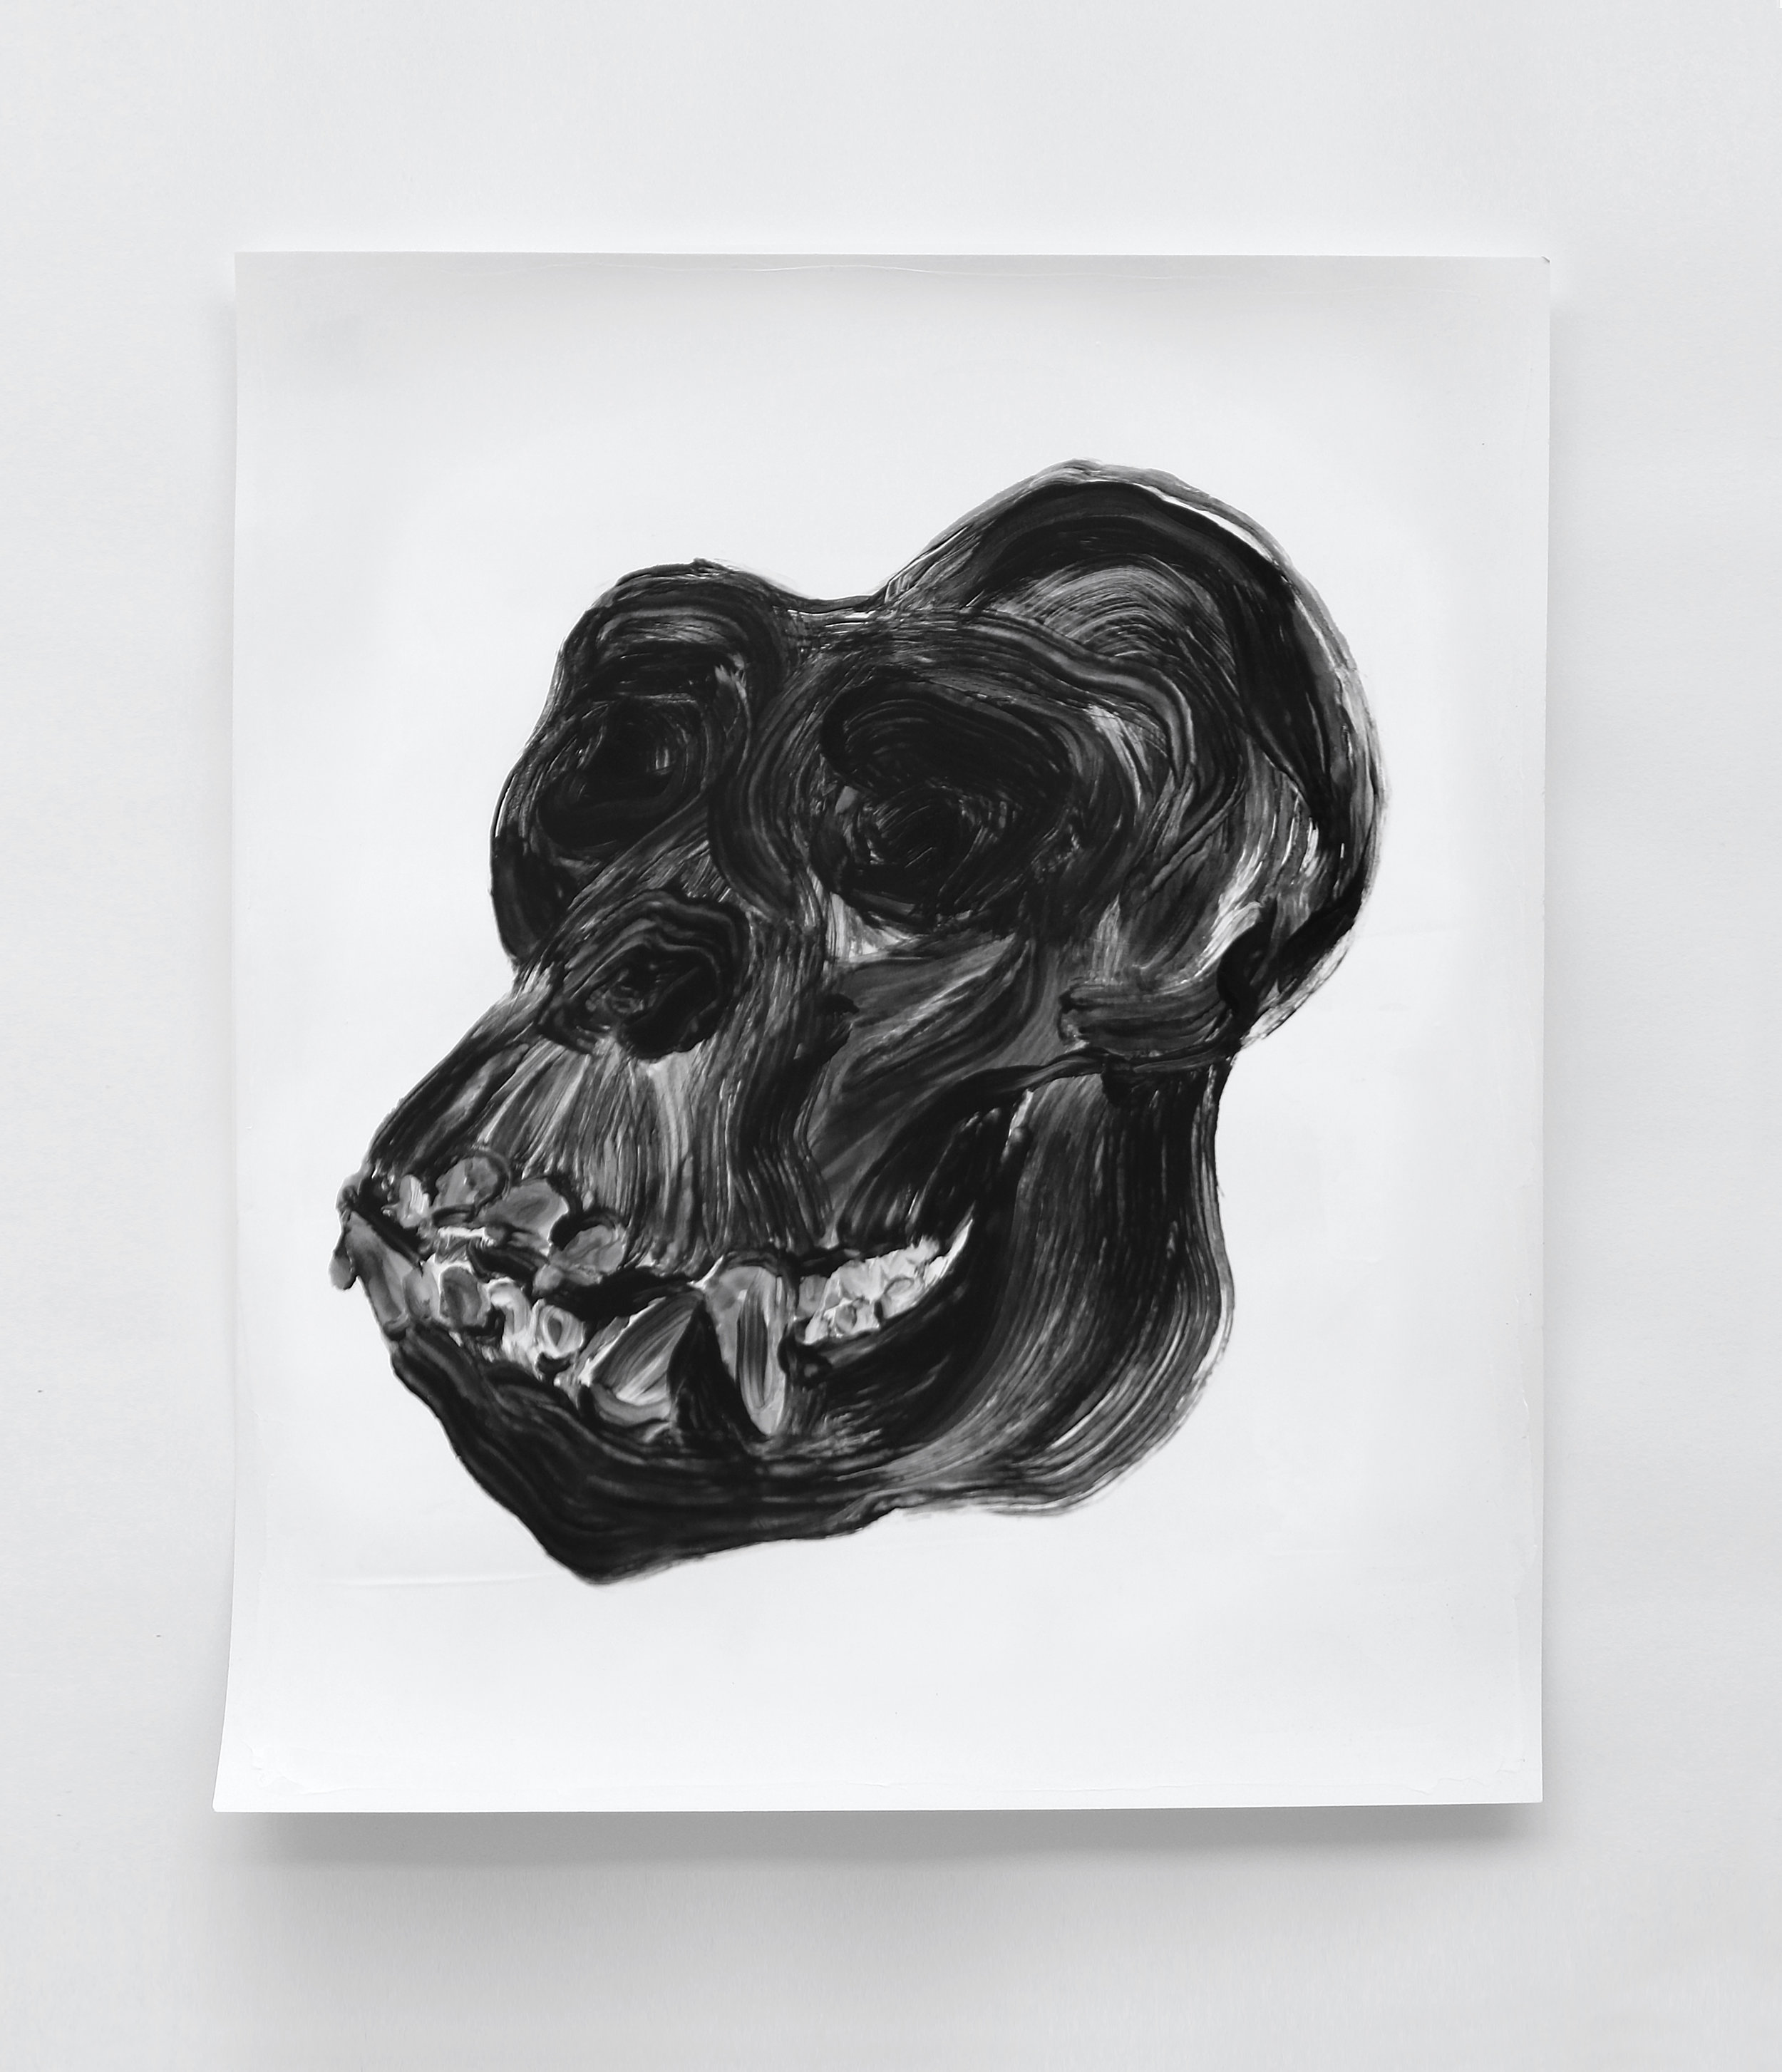  Crâne de gorille / Gorilla skull  Huile sur papier / Oil on paper  12 X 16 in / 30 X 40 cm    